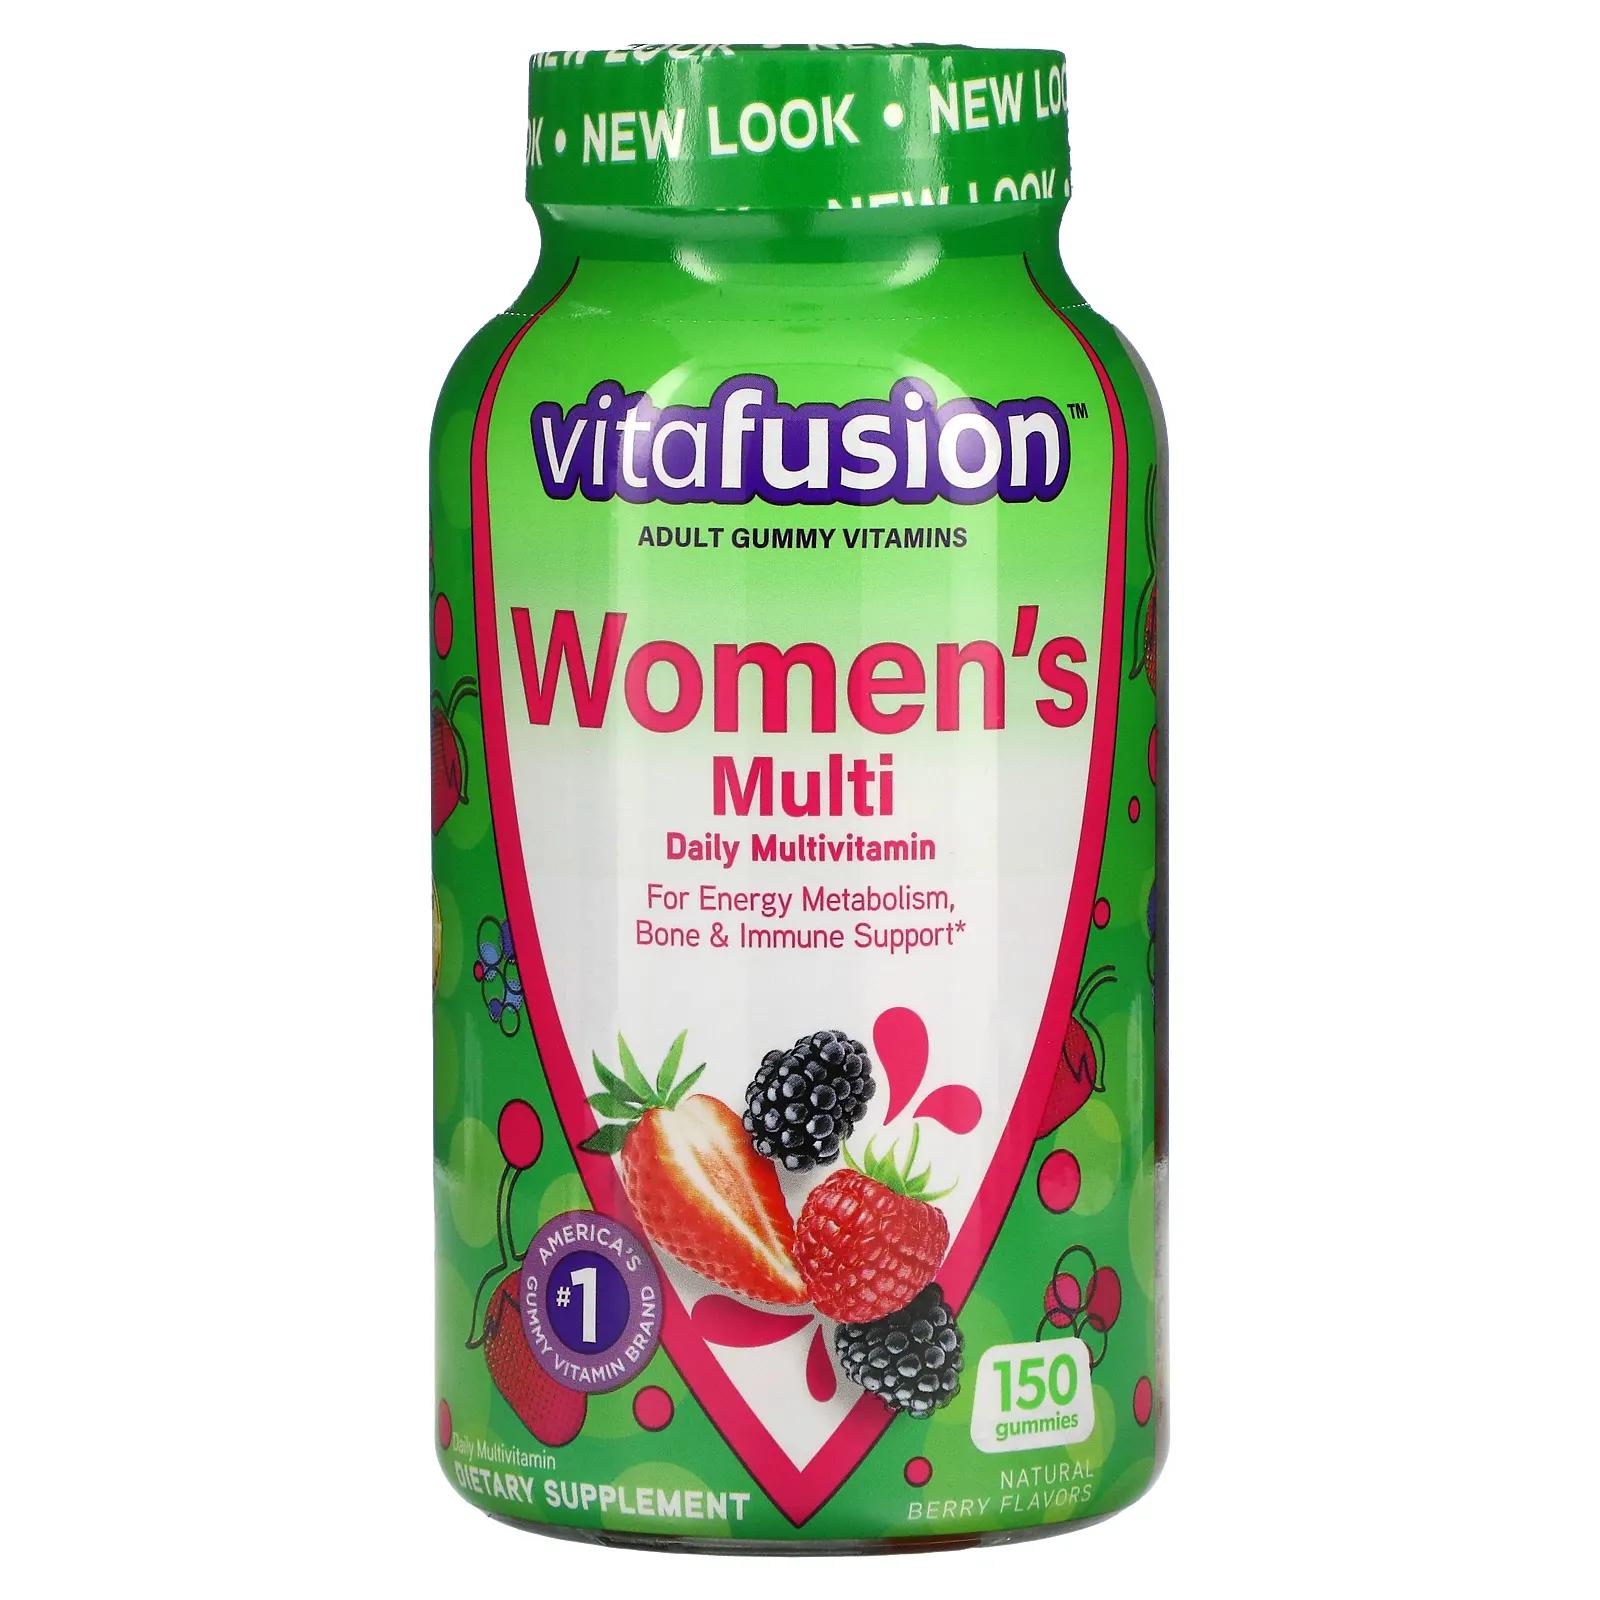 VitaFusion Жевательные витамины для женщин натуральные ягодные вкусы 150 жевательных таблеток цена и фото